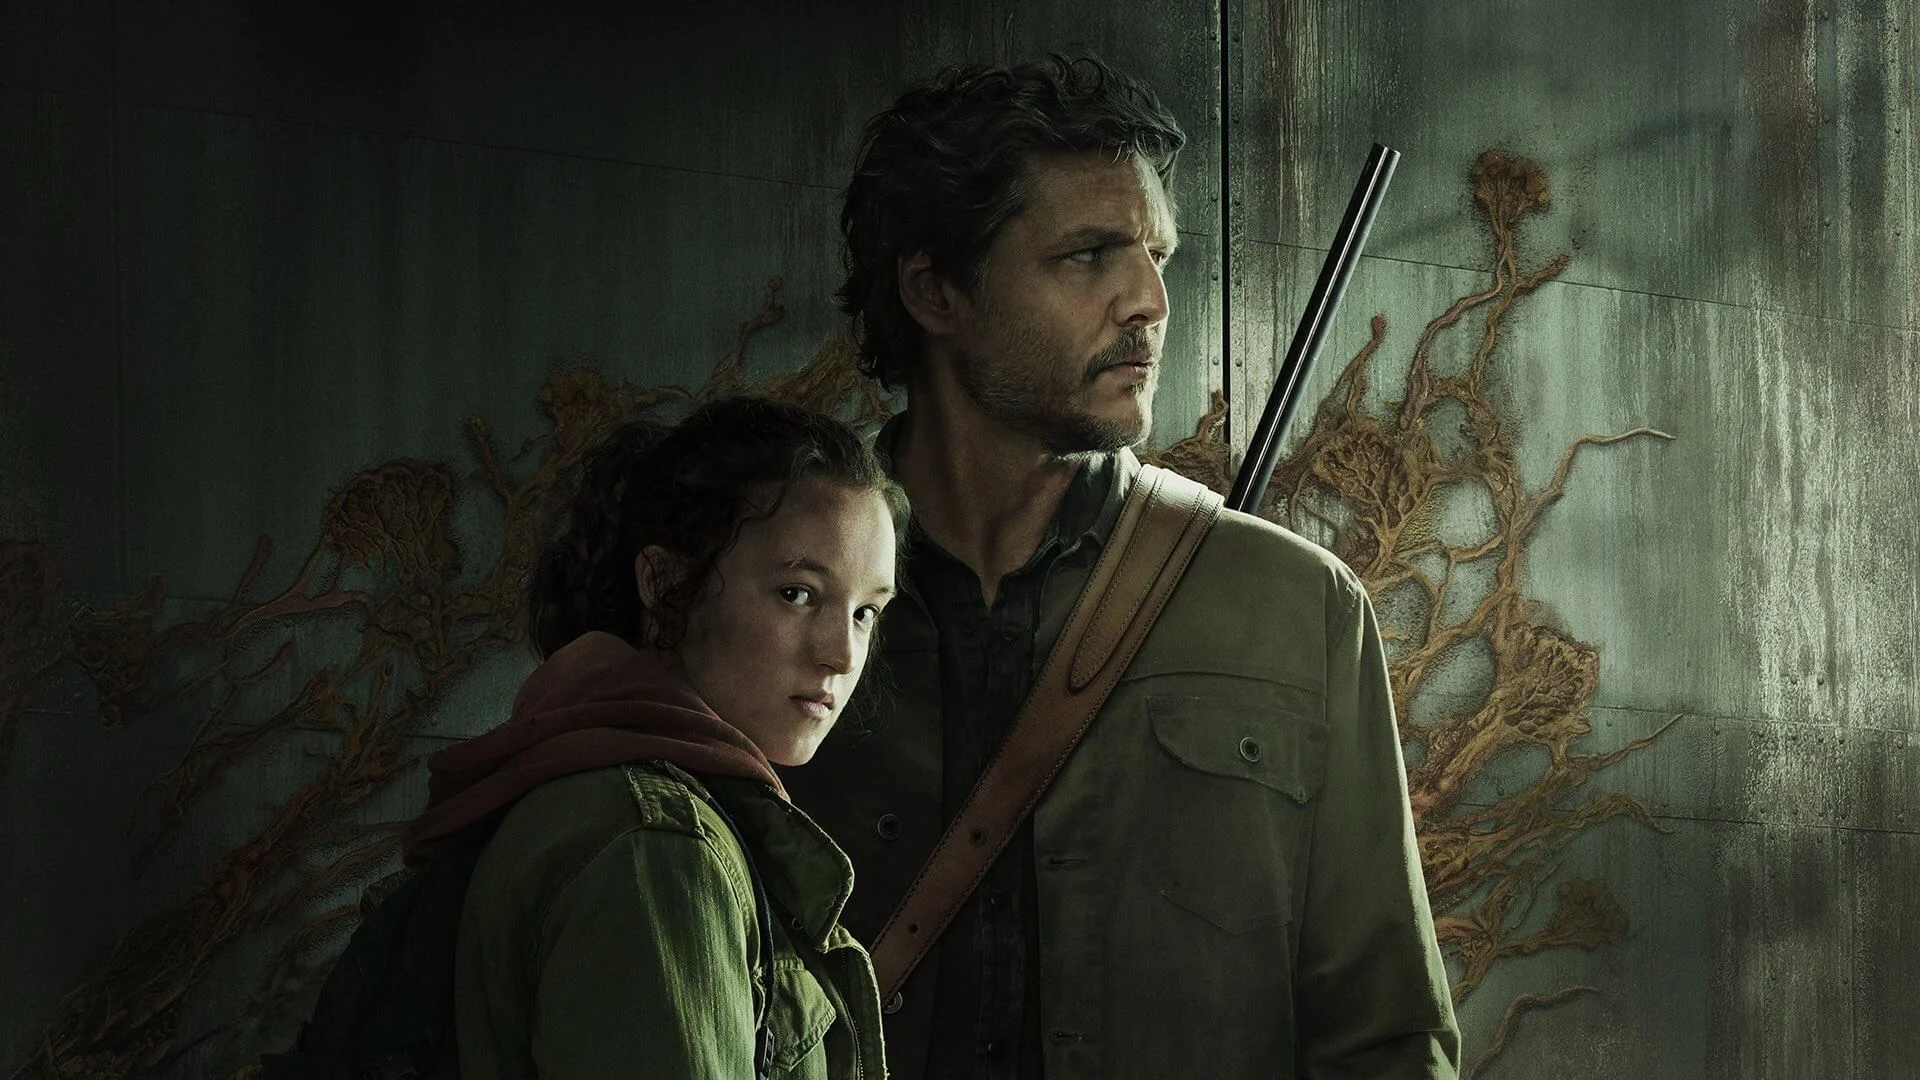 A The Last of Us társszerzője elárulta, hogy a sorozat miért nem lesz olyan erőszakos, mint a videojáték